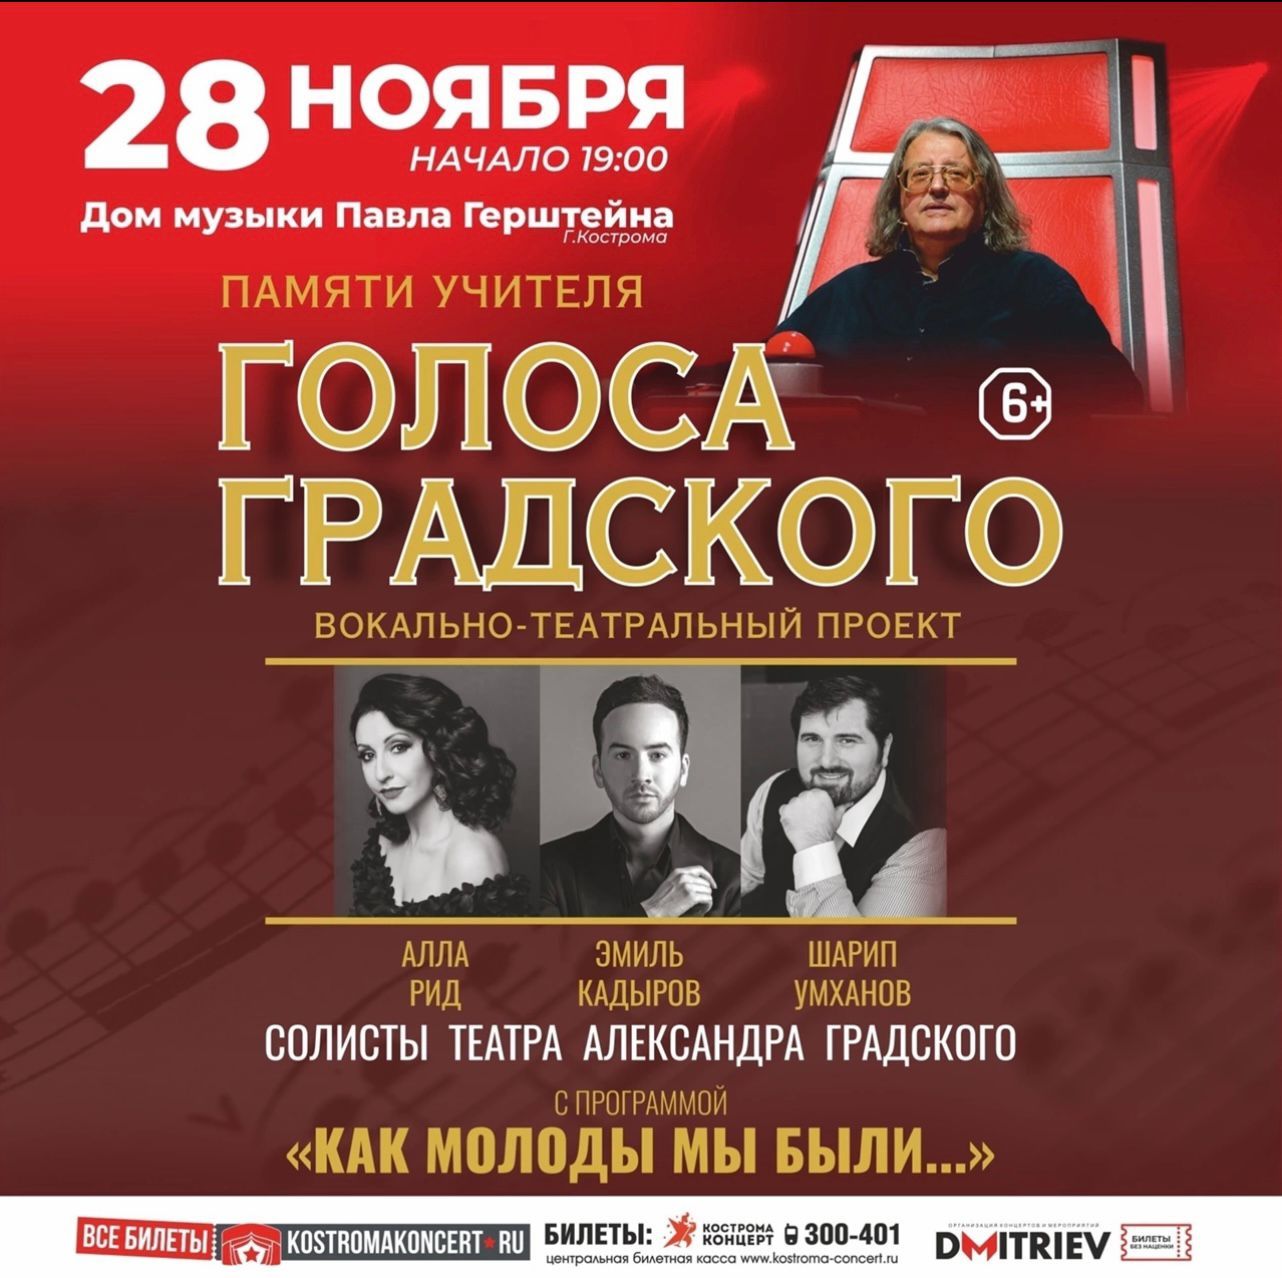 Участники шоу «Голос» споют в Костроме в день памяти их наставника Александра Градского